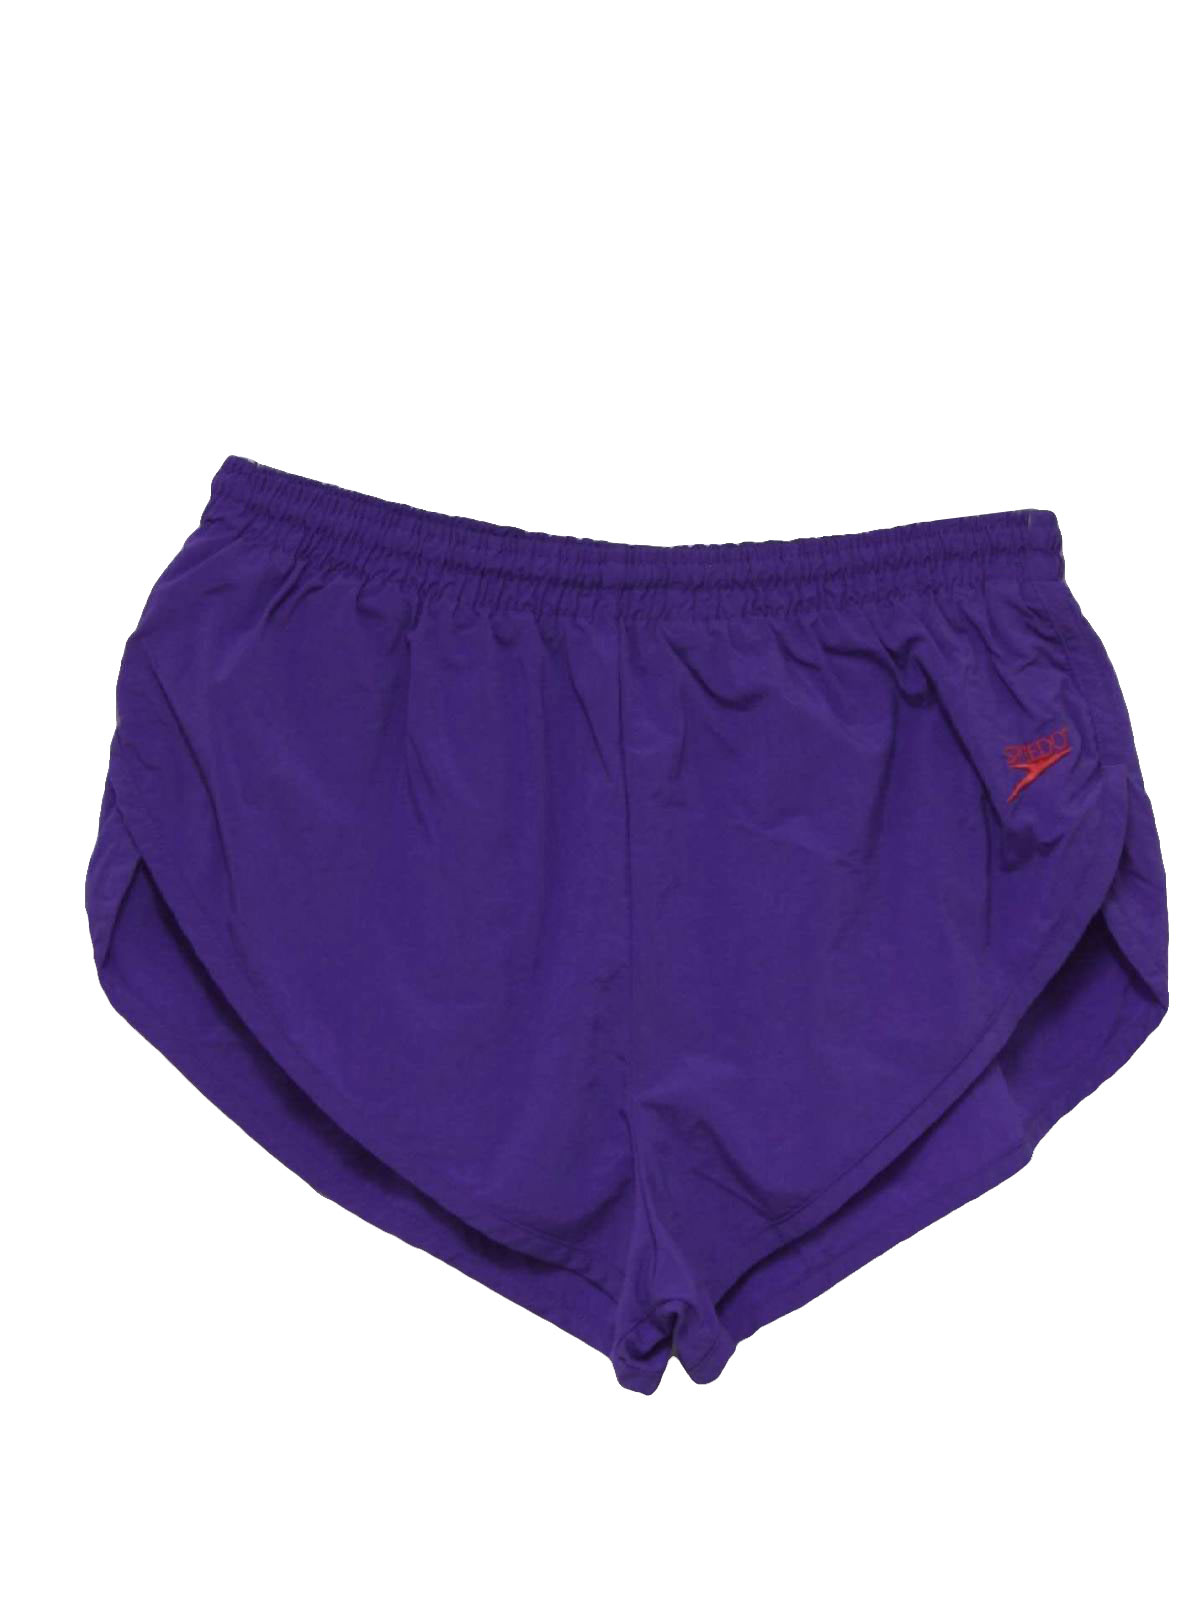 Retro 90s Swimsuit/Swimwear (Speedo) : 90s -Speedo- Mens violet ...